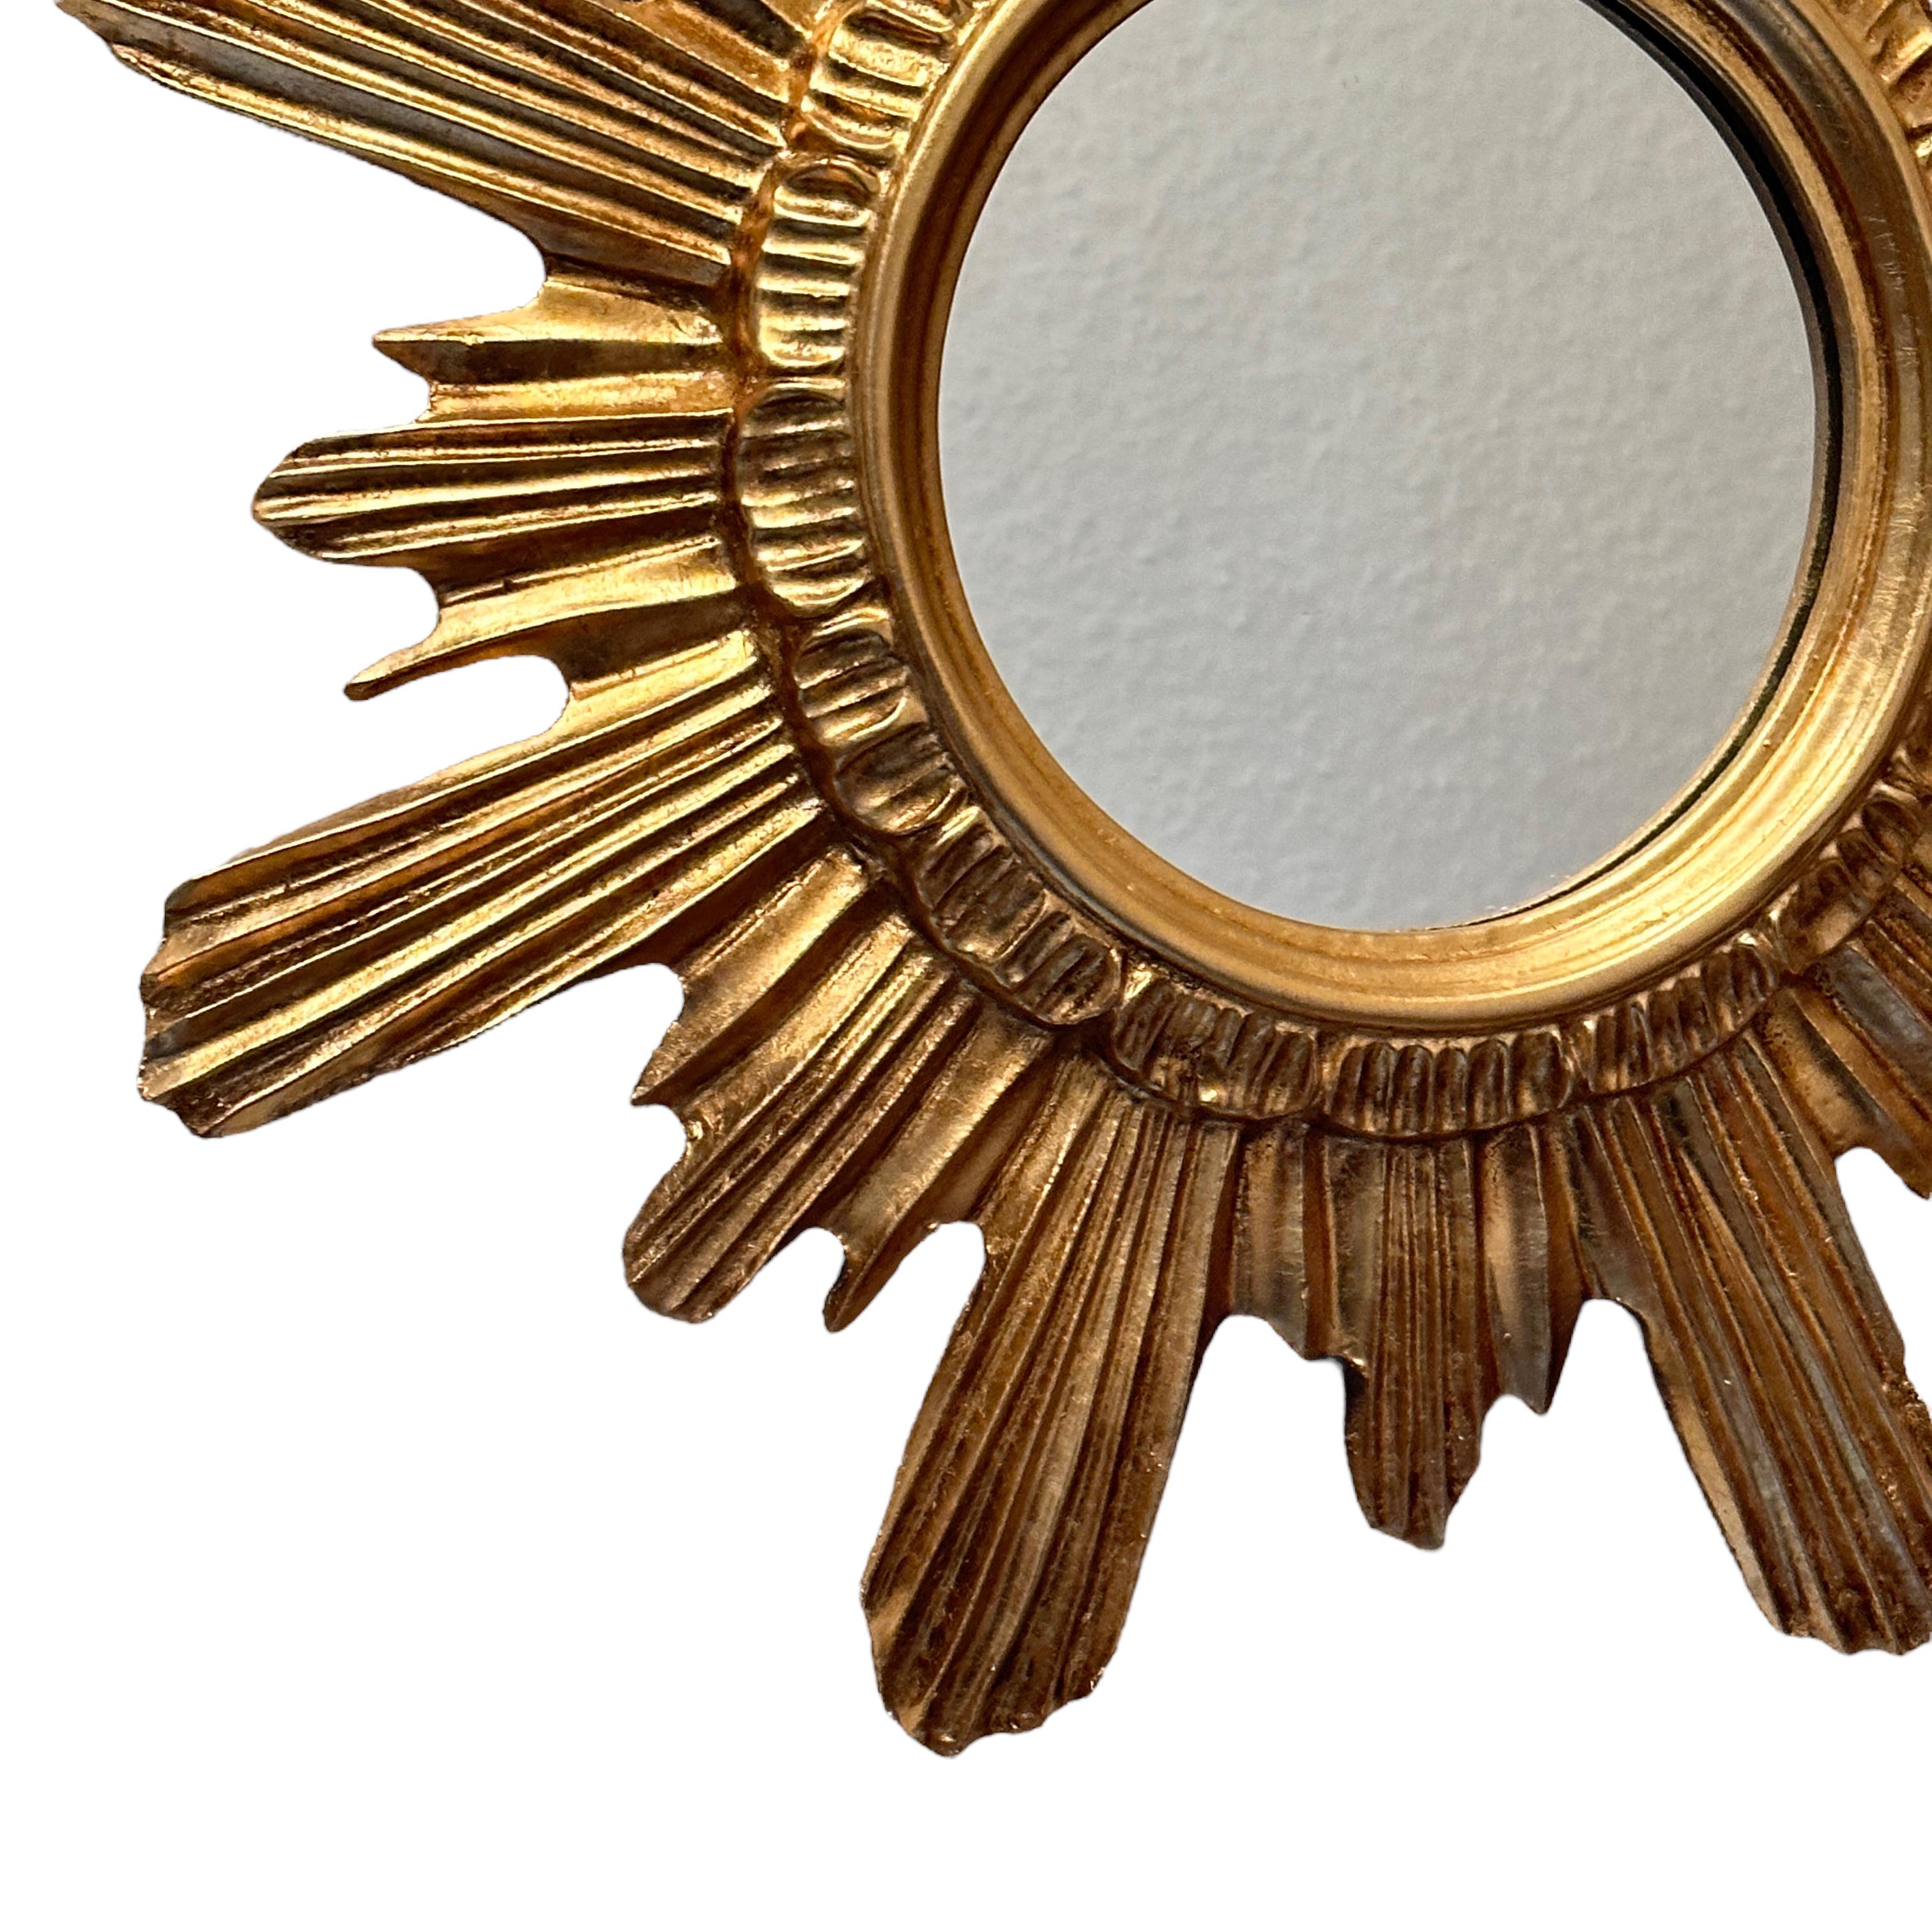 Un magnifique miroir en étoile. Fait de bois doré et de stuc. Aucun éclat, aucune fissure, aucune réparation. Il mesure approximativement : 16,63